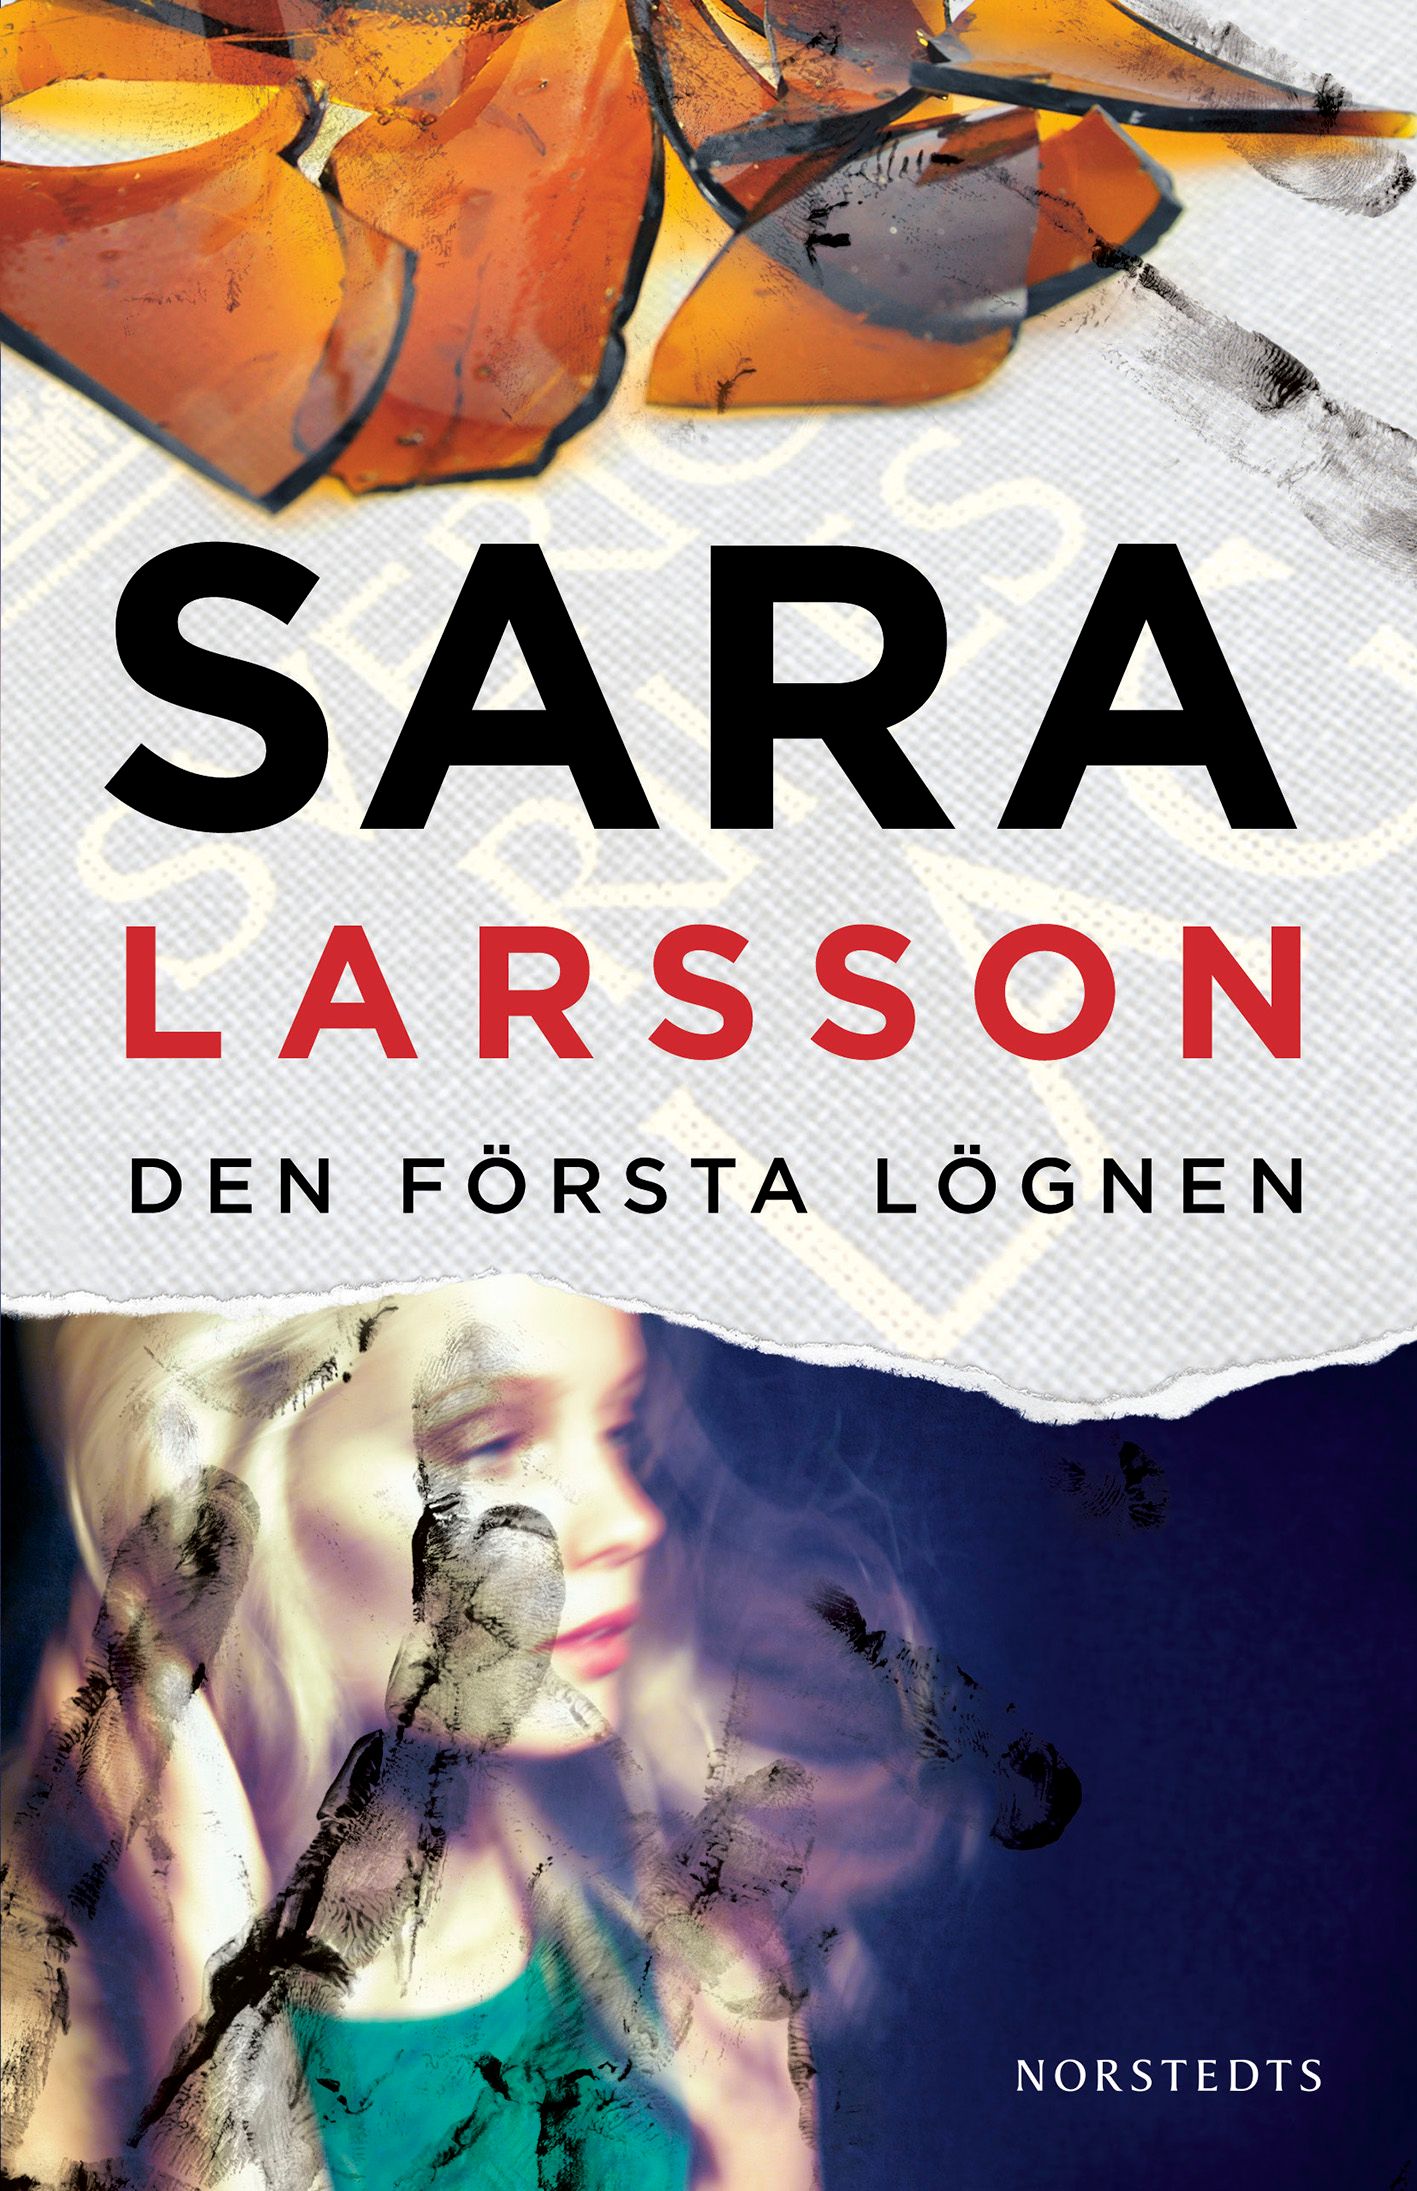 Den första lögnen, e-bok av Sara Larsson